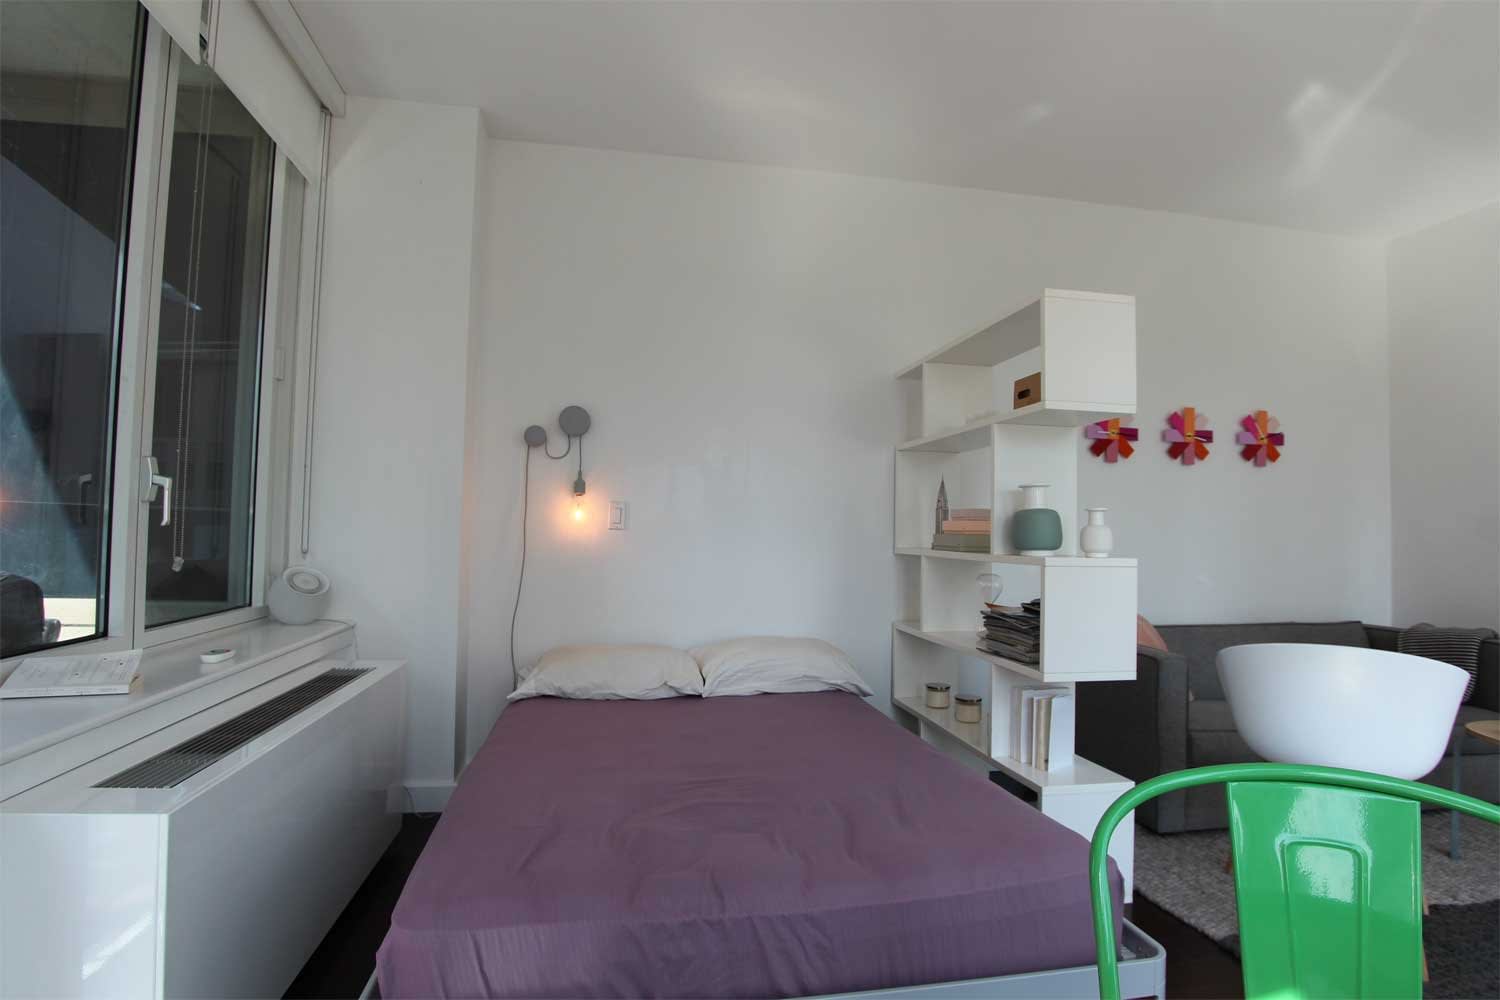 9 Smart Design Ideas For Your Studio Apartment Apartment Therapy,Danish Interior Design Pastel